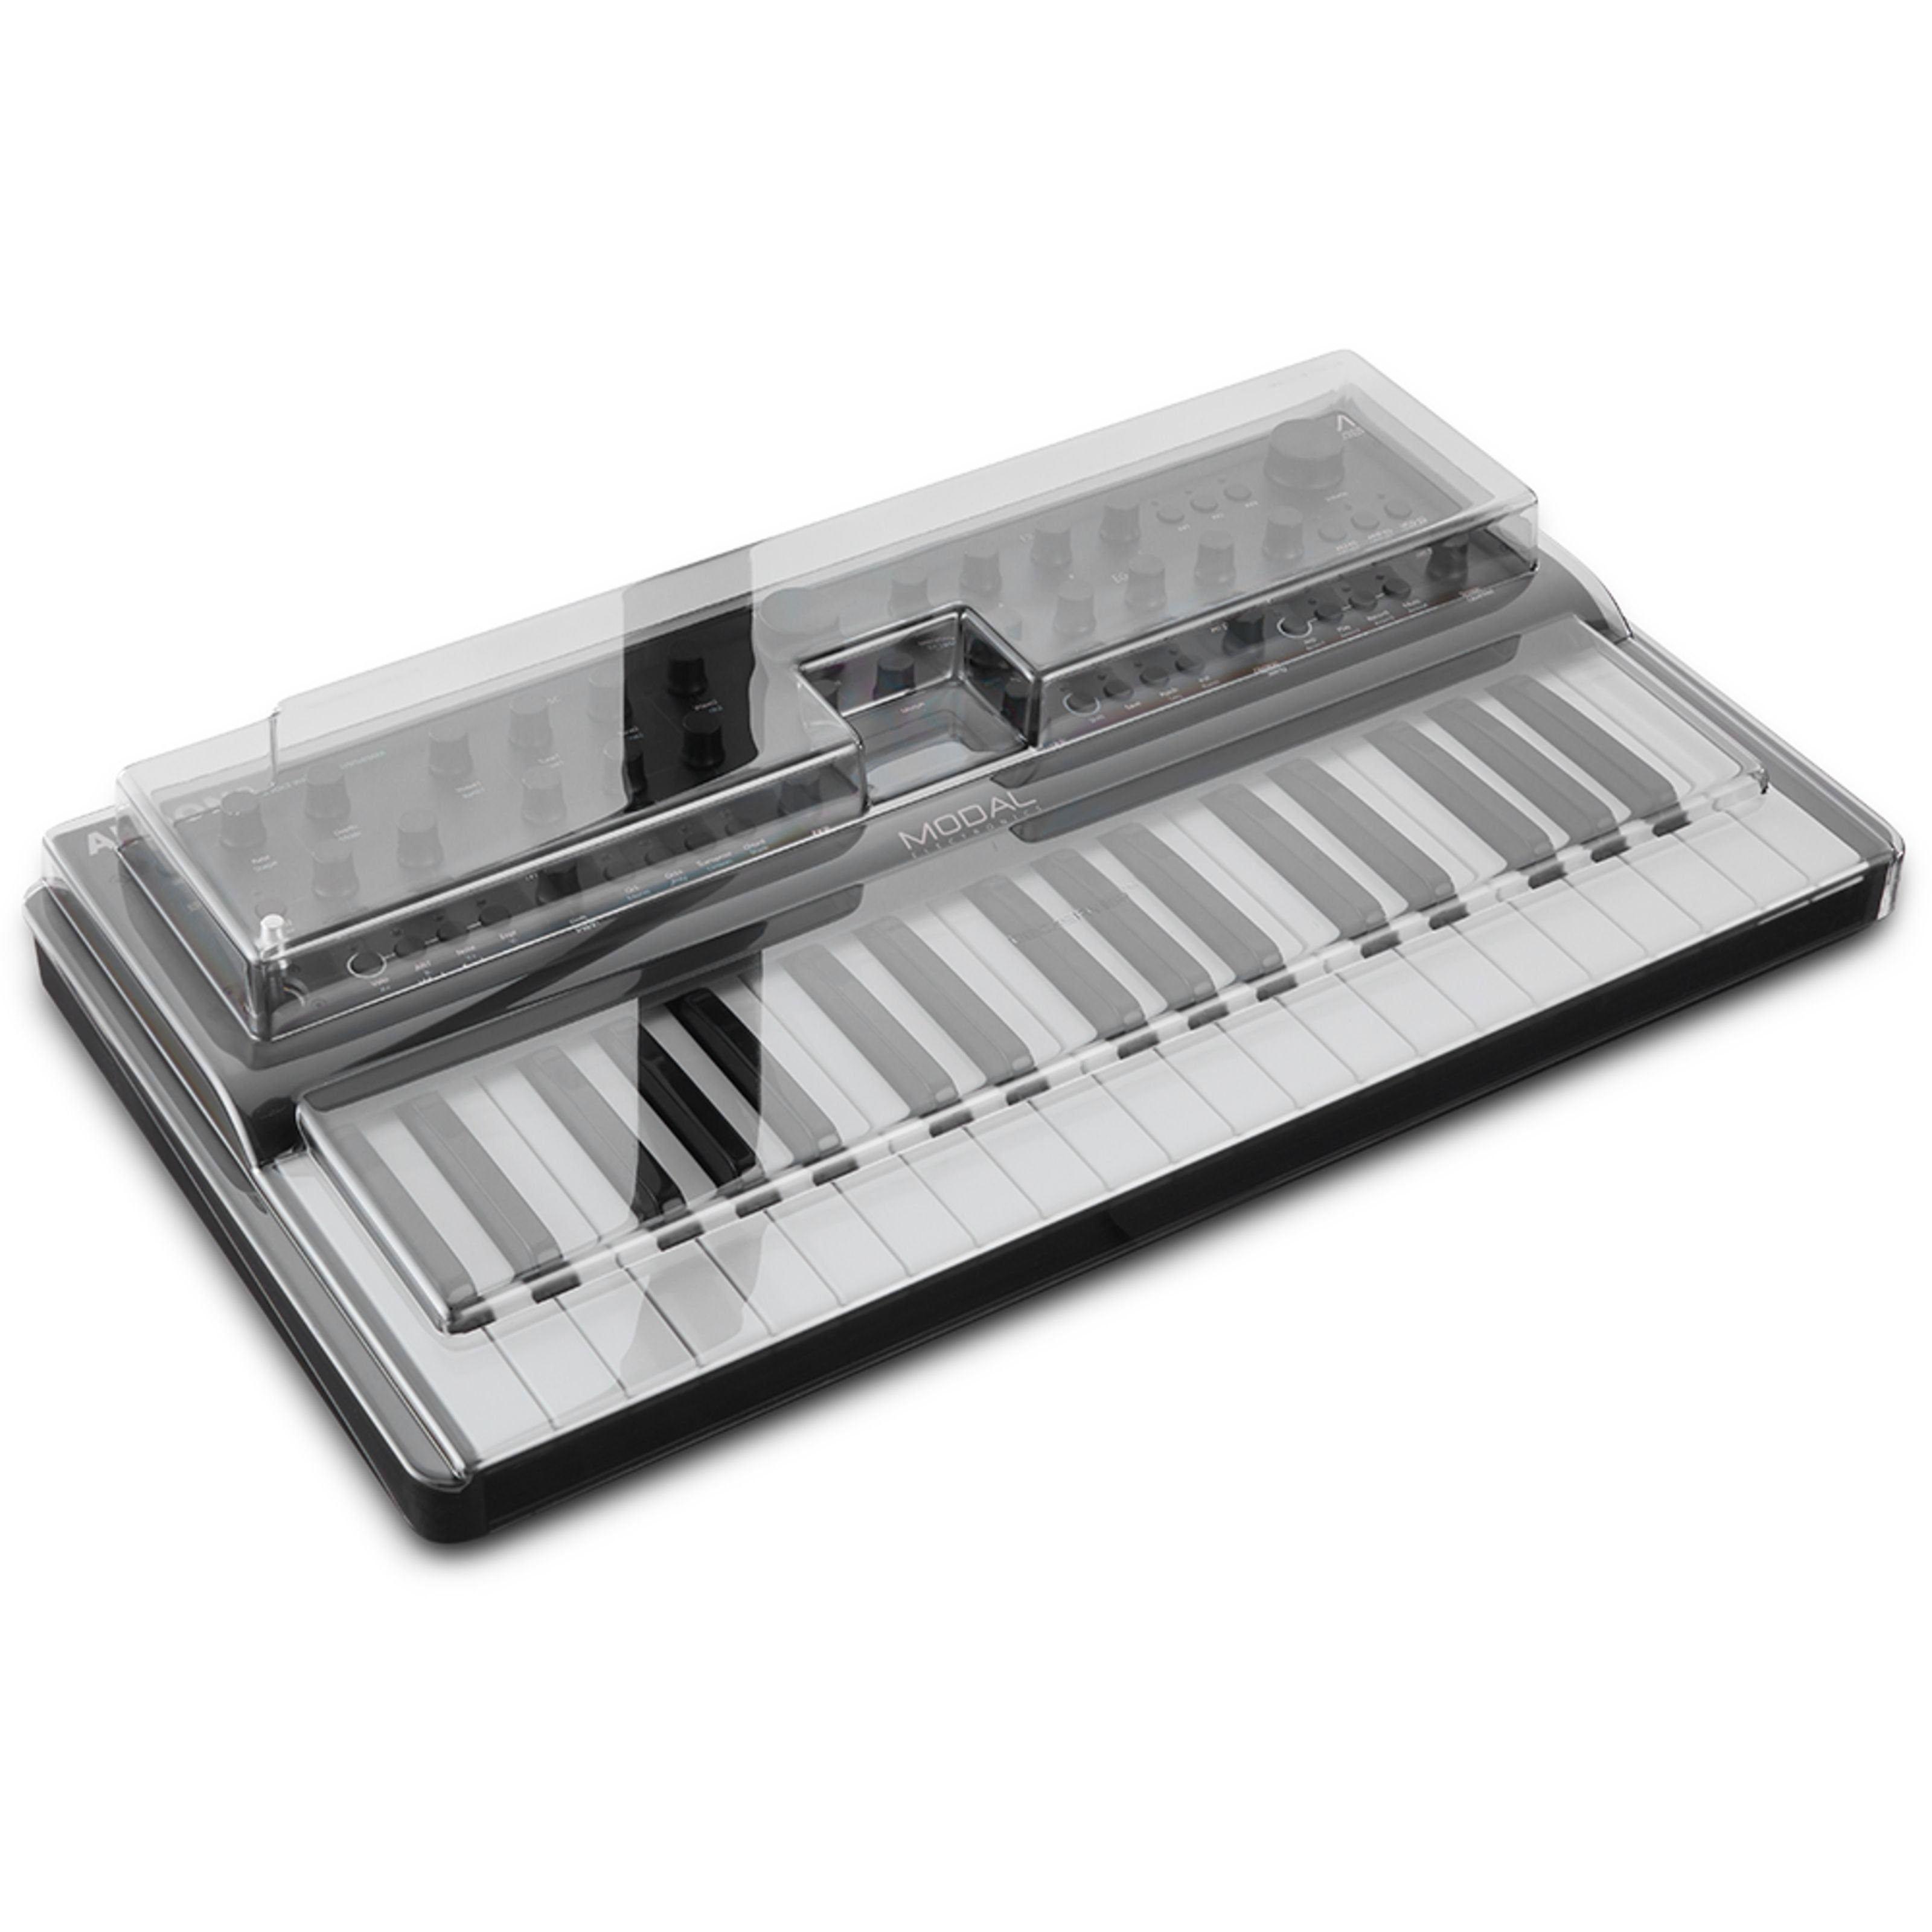 Cobalt8 - Cover für Abdeckung Keyboards Spielzeug-Musikinstrument, / Argon8 Modal Decksaver